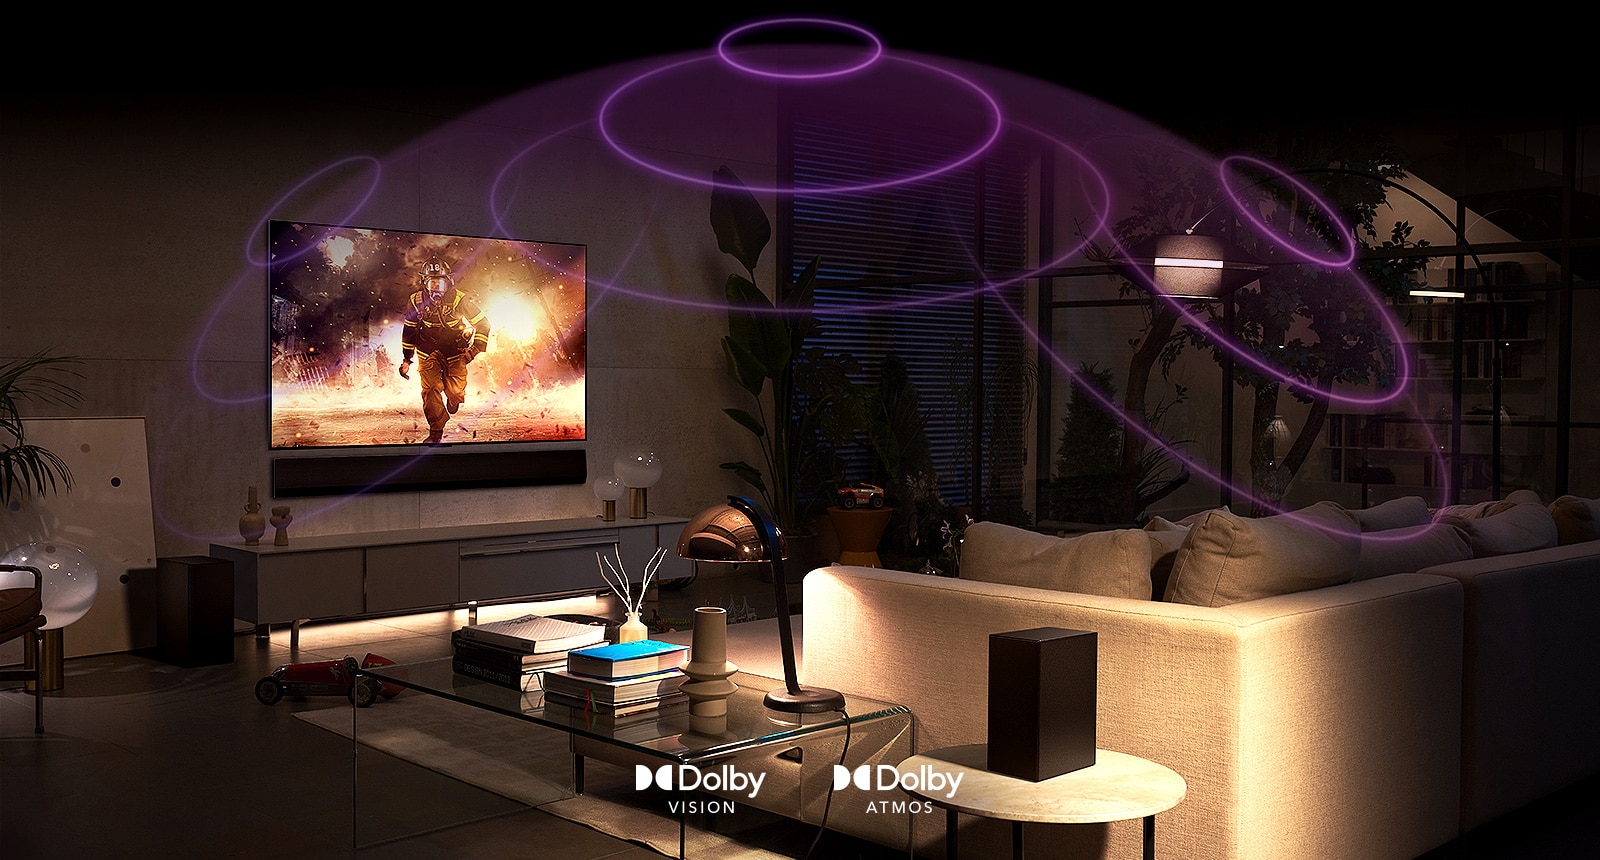 Image d'un téléviseur LG OLED dans une pièce diffusant un film d'action.  Les ondes sonores créent un dôme entre le canapé et le téléviseur, représentant un son spatial immersif.